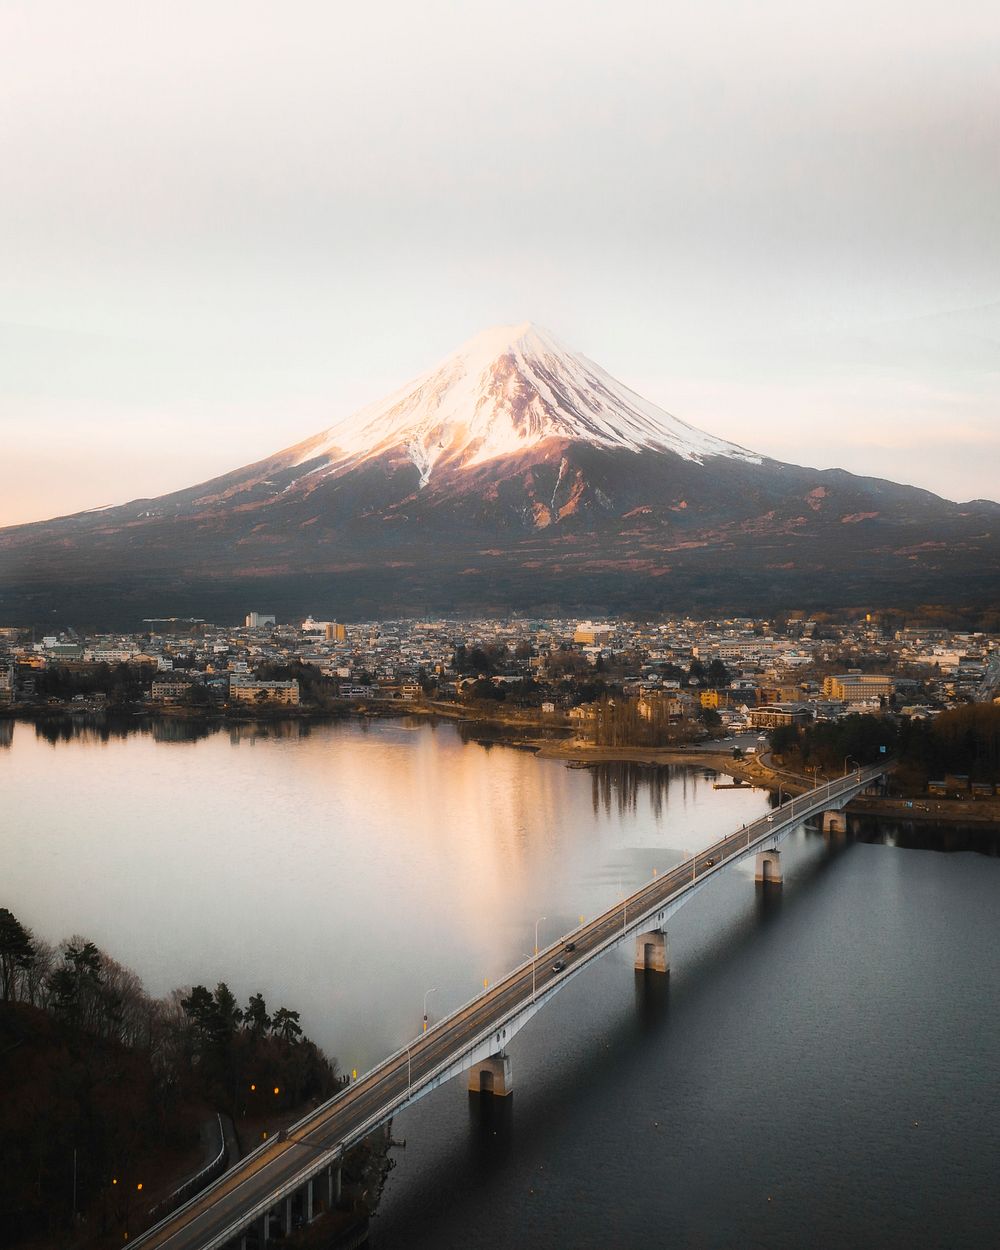 View of Mount Fuji and Lake Kawaguchi, Japan